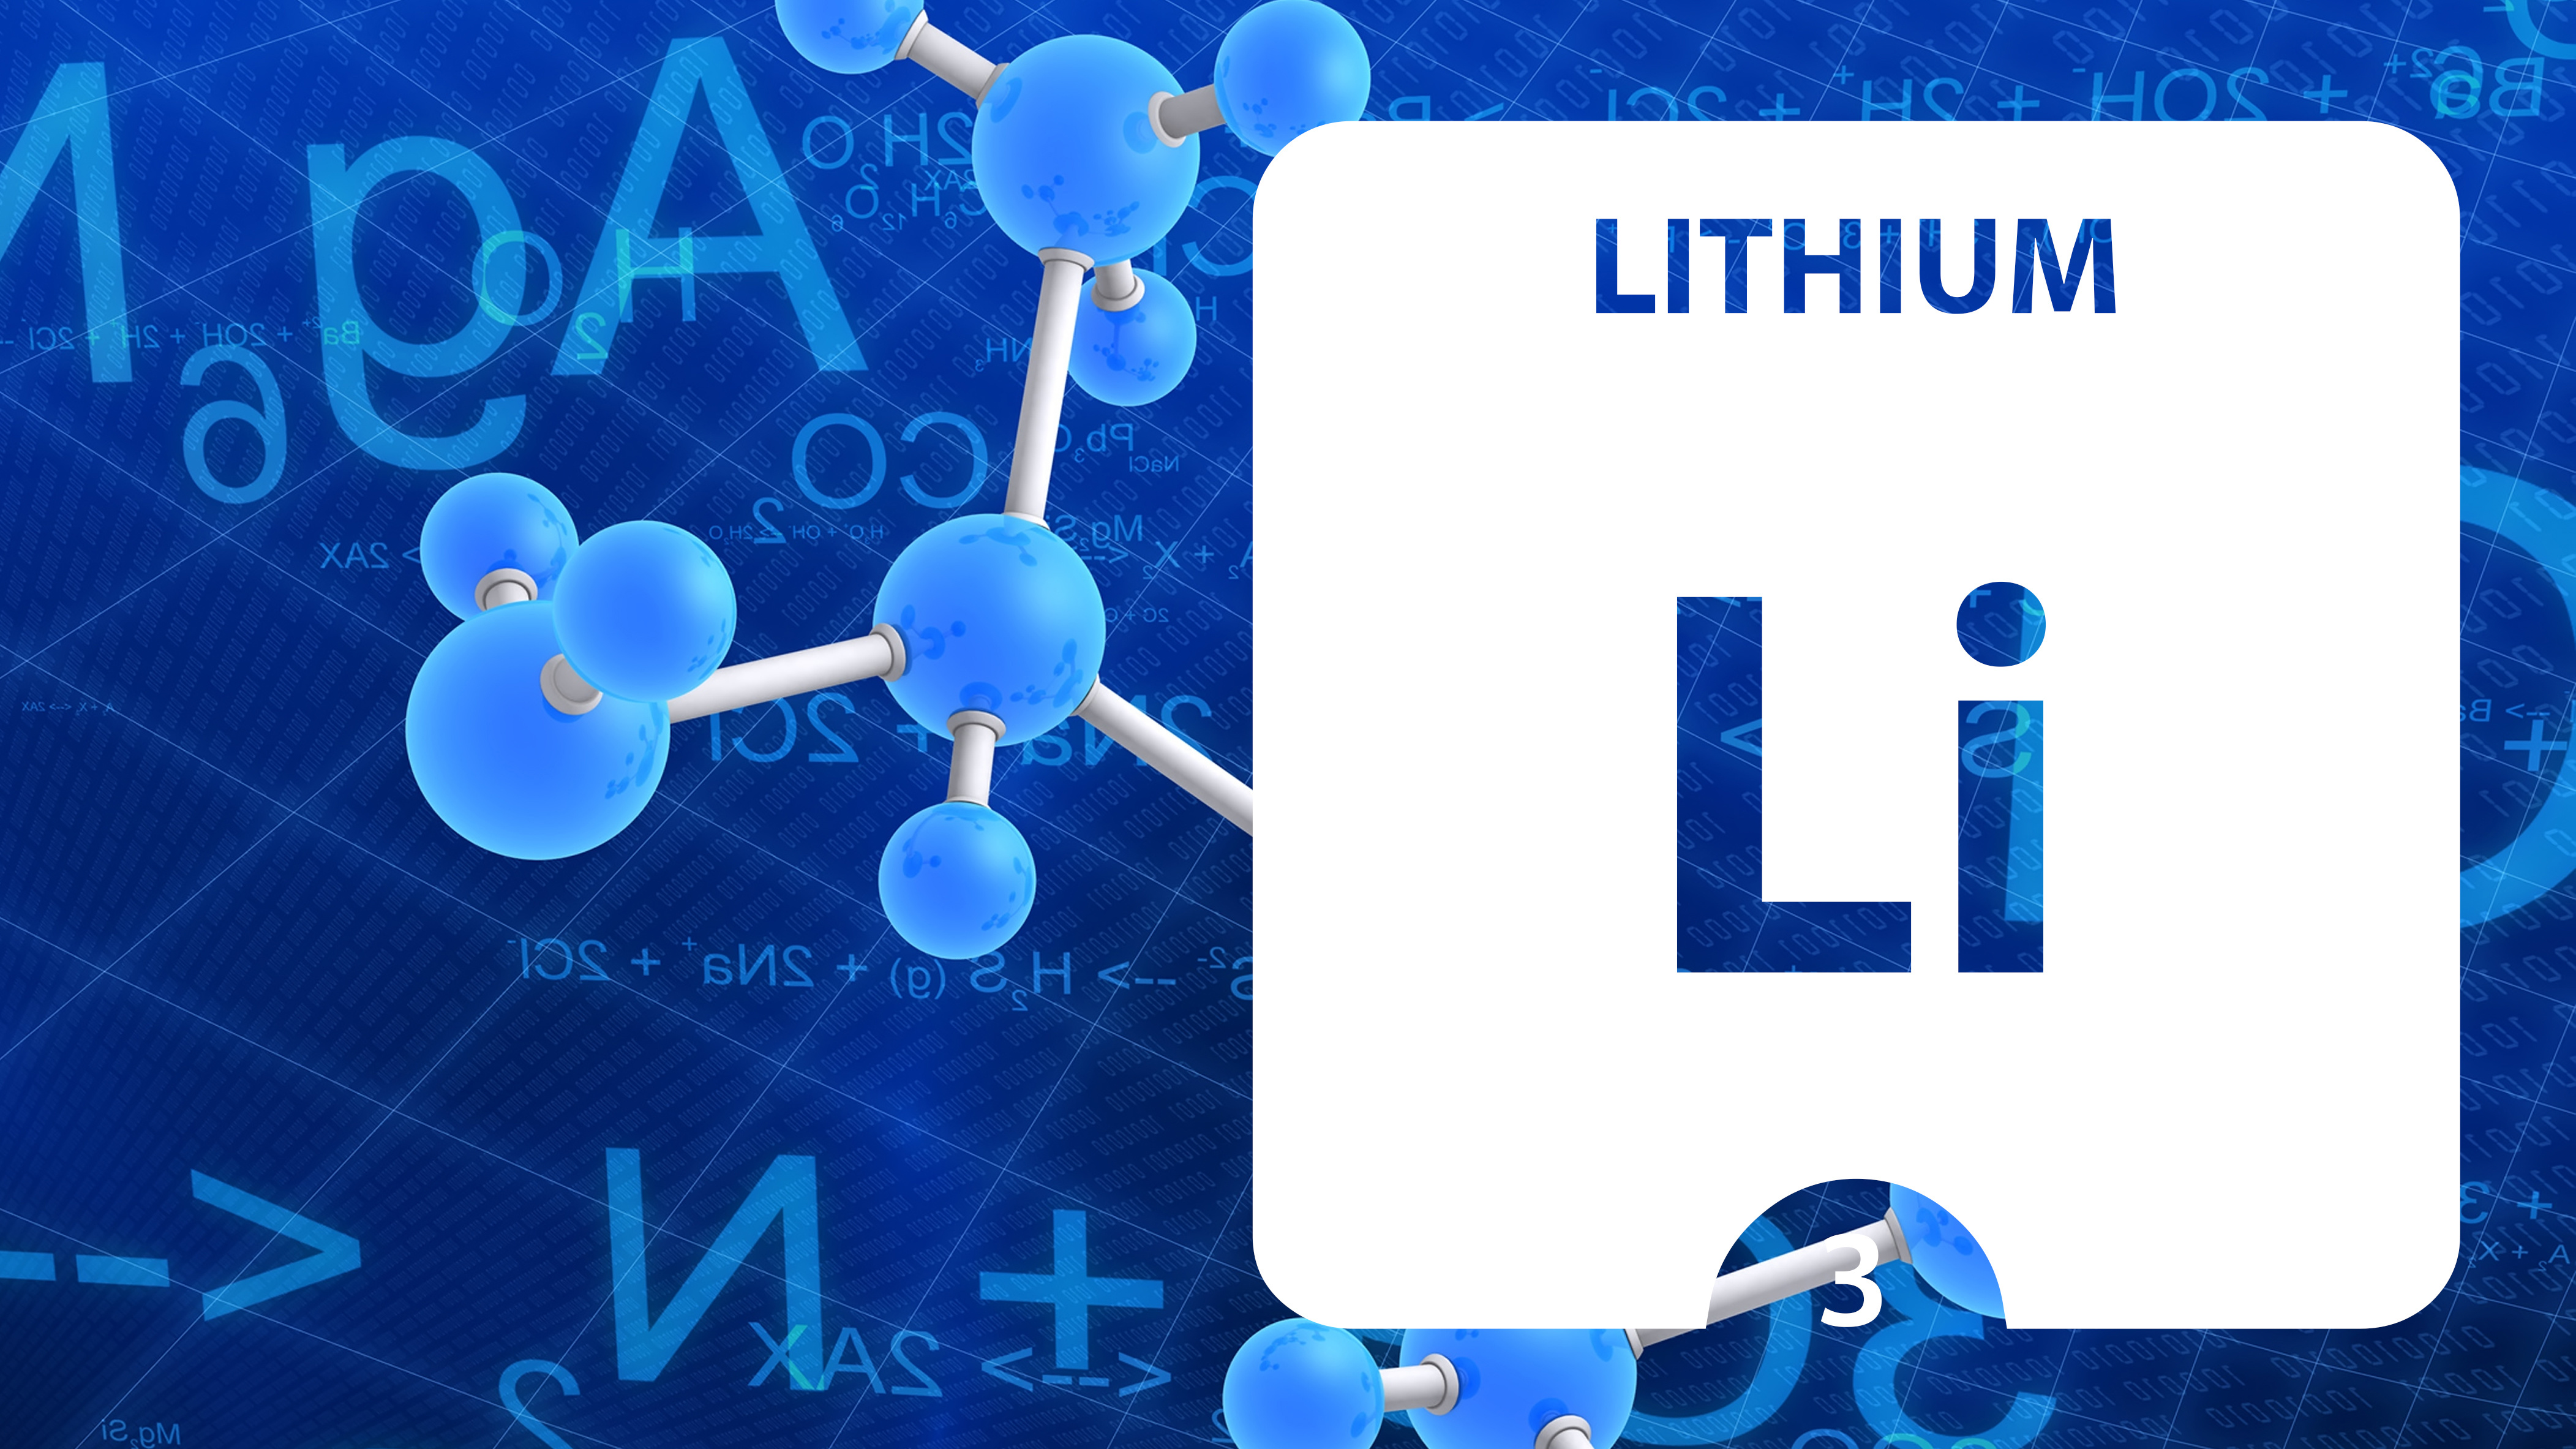 Les neurones de patients atteints accumulent des niveaux plus élevés de lithium que les neurones de témoins sains (Visuel Adobe Stock 295601414)